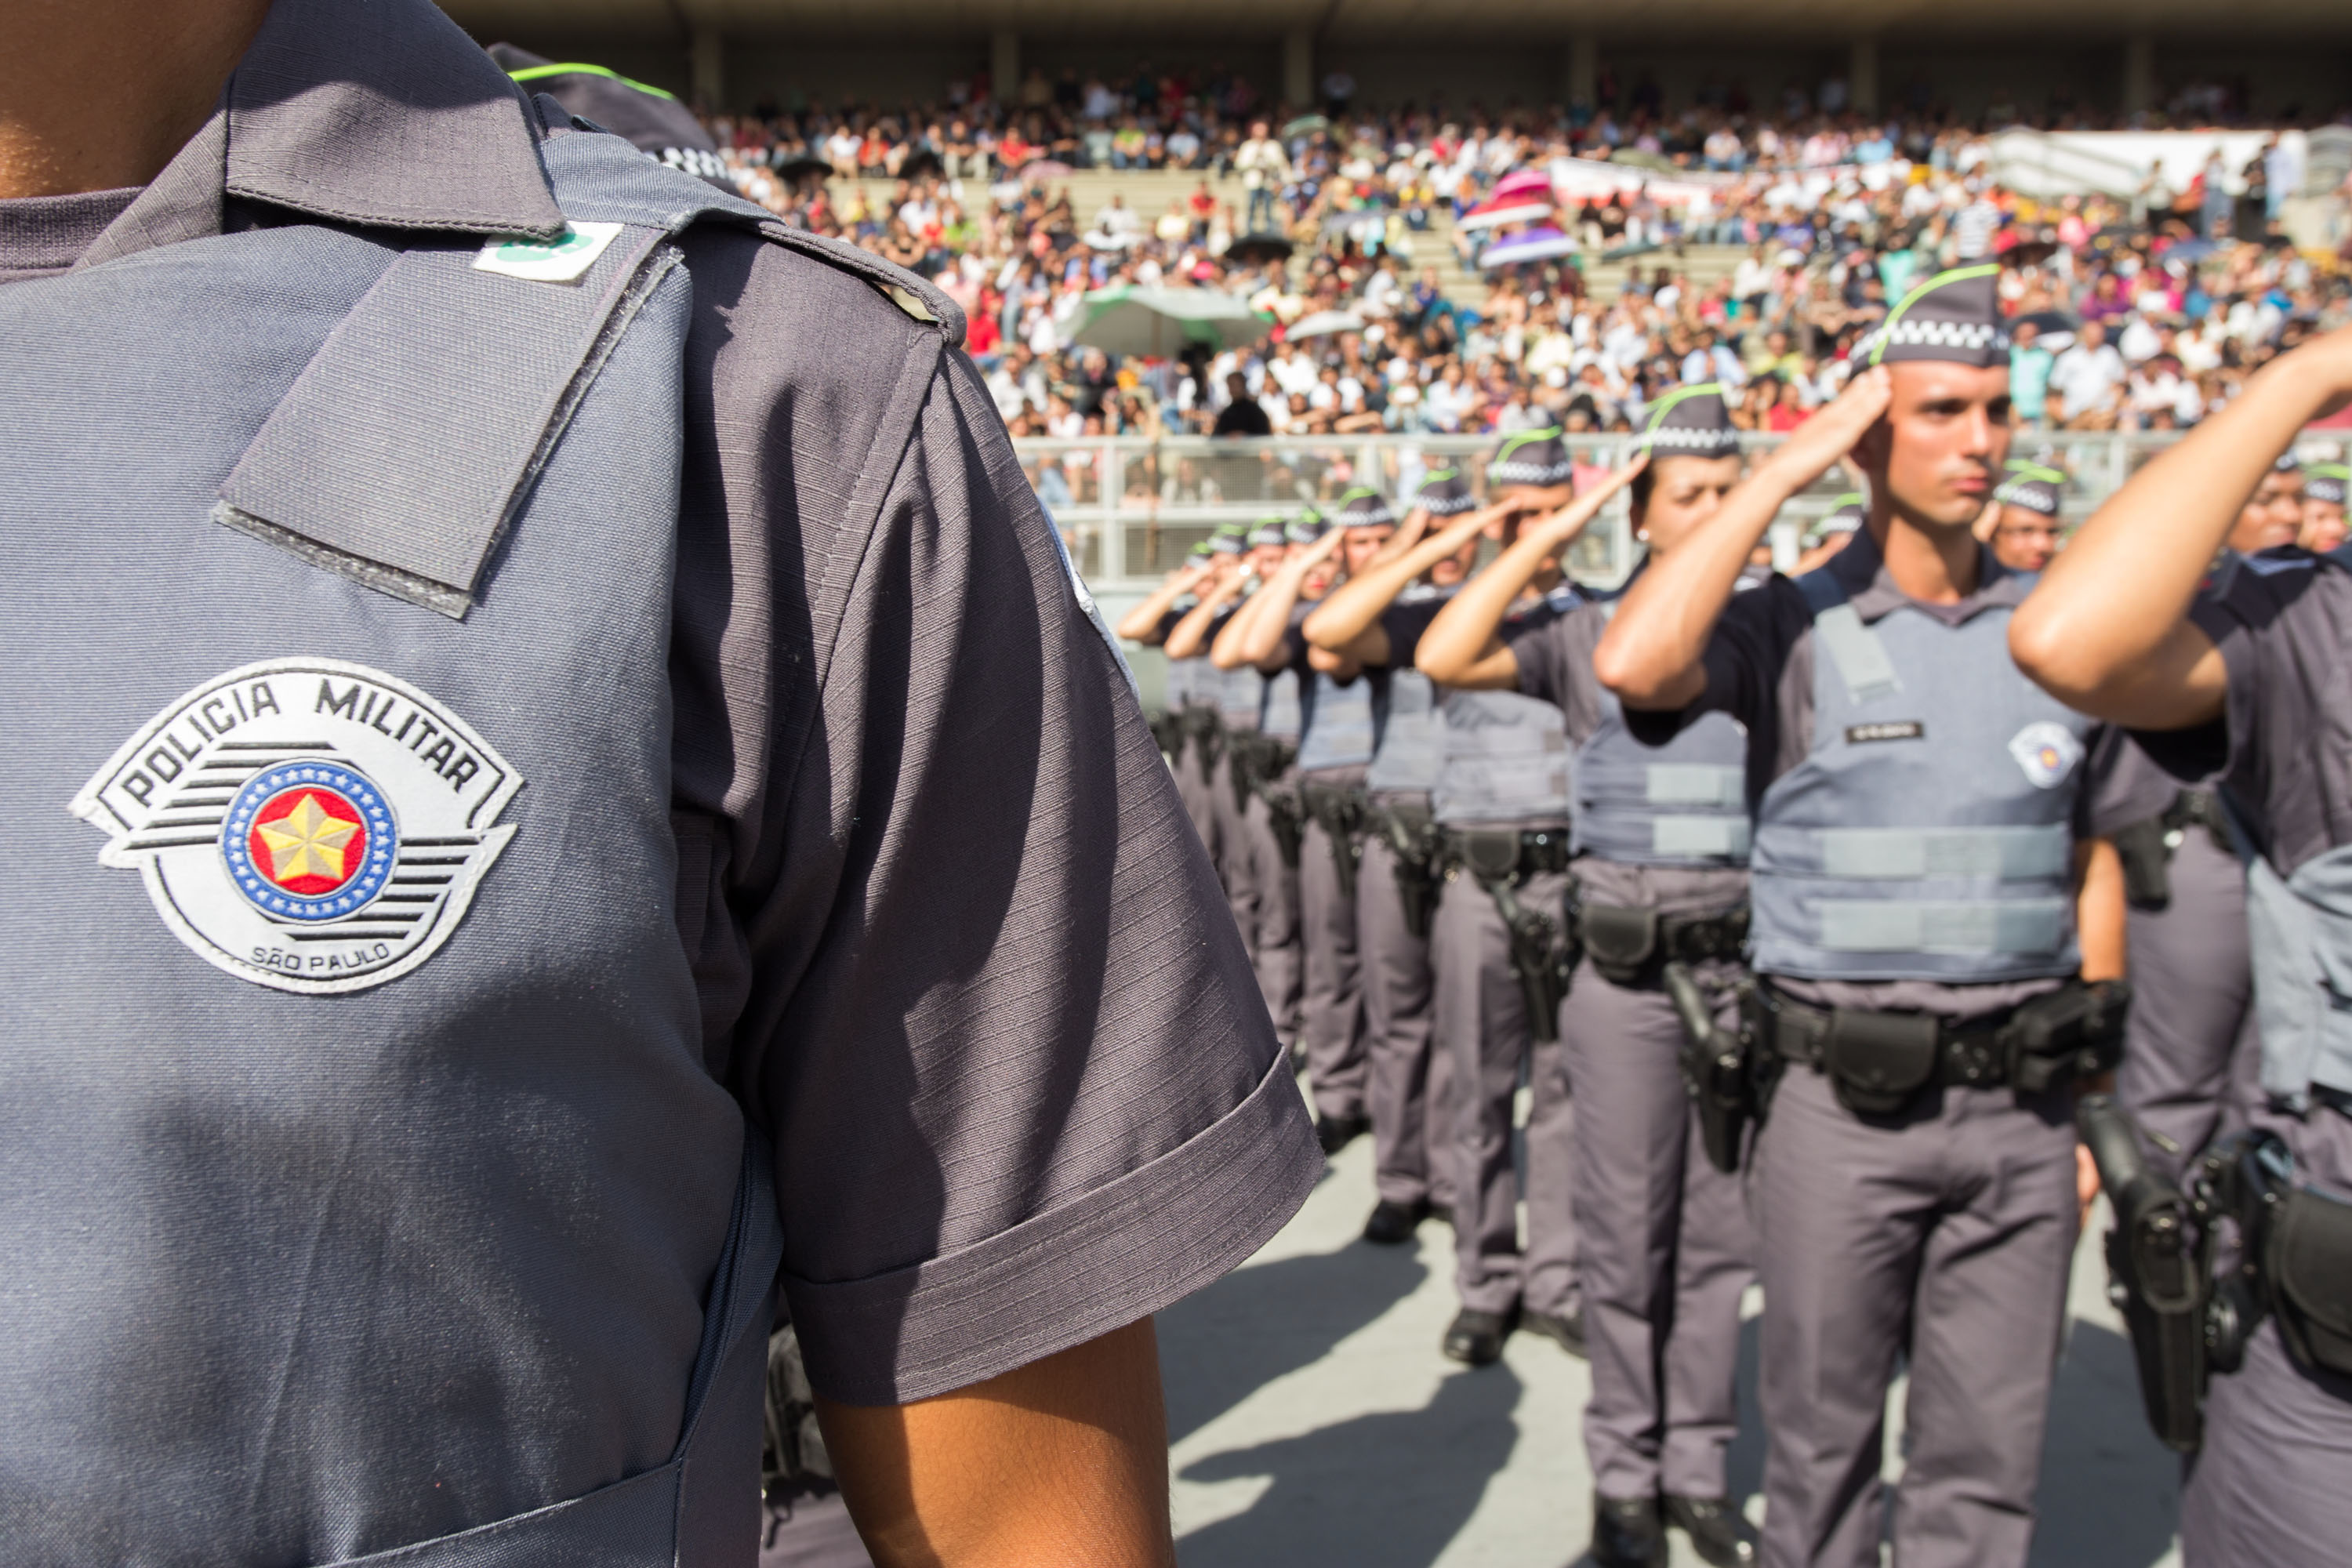 Polícia Militar abre inscrições para concurso no dia 15 de agosto